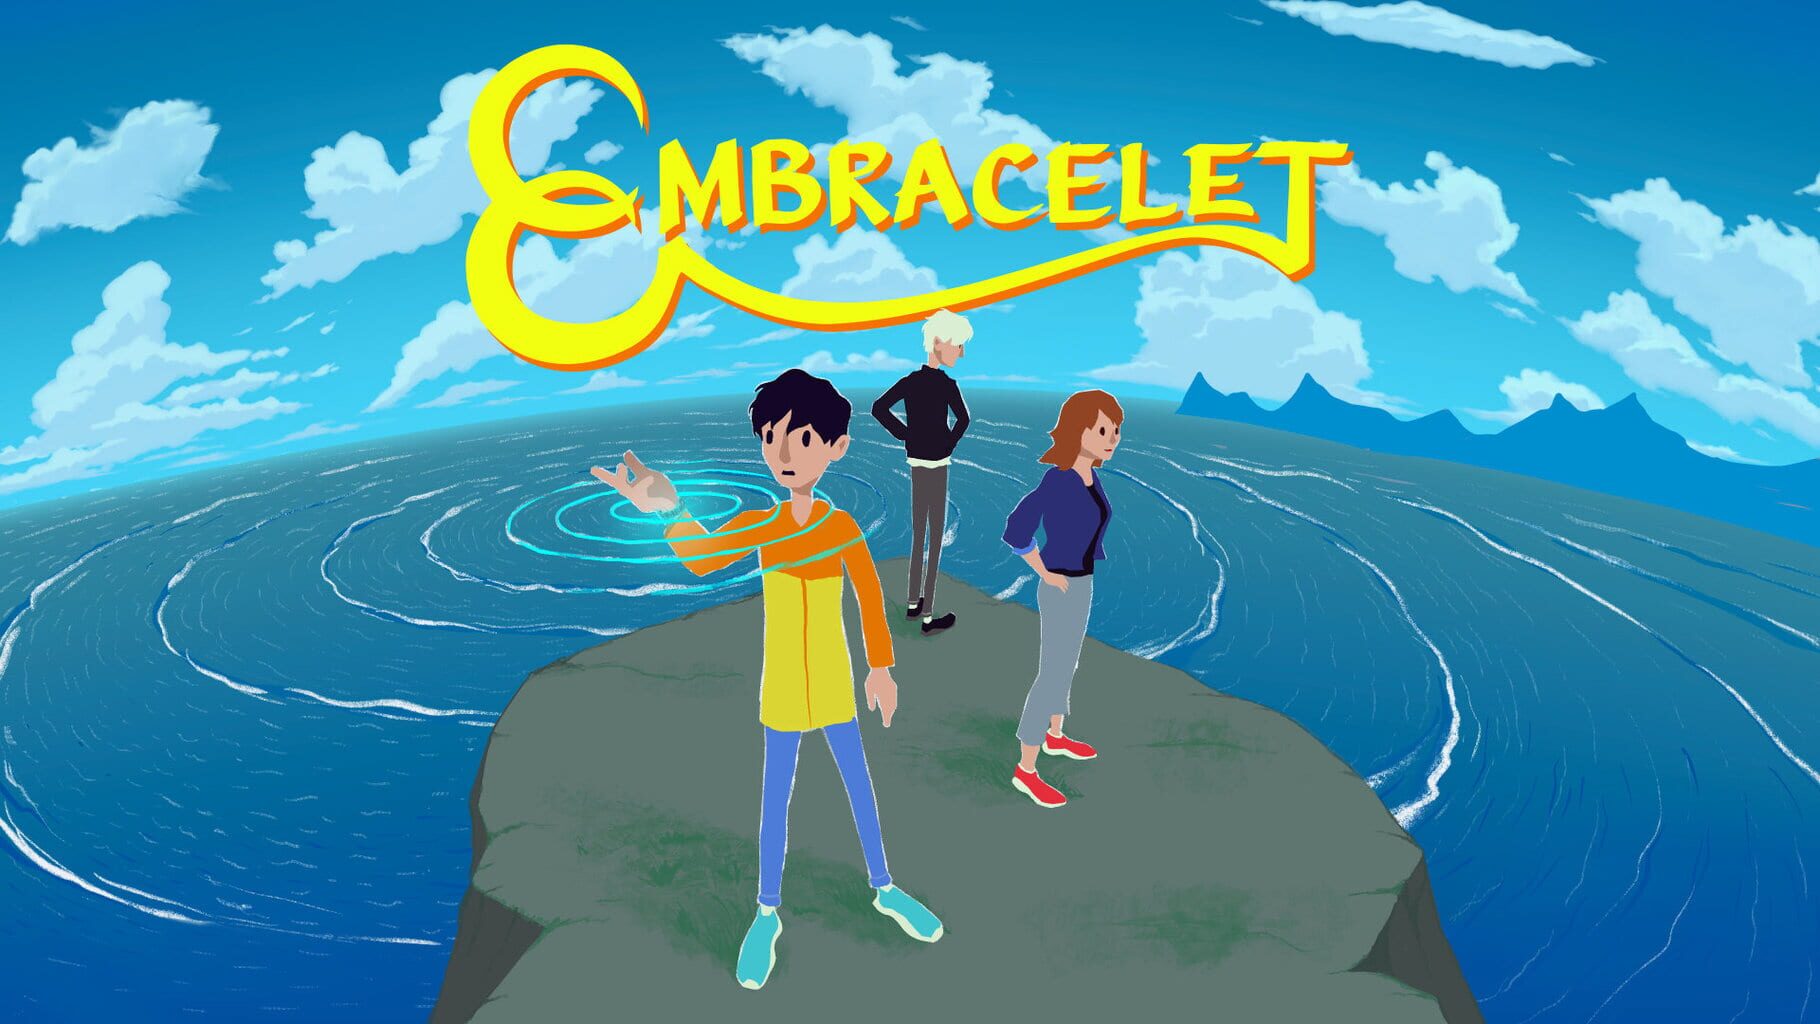 Embracelet artwork